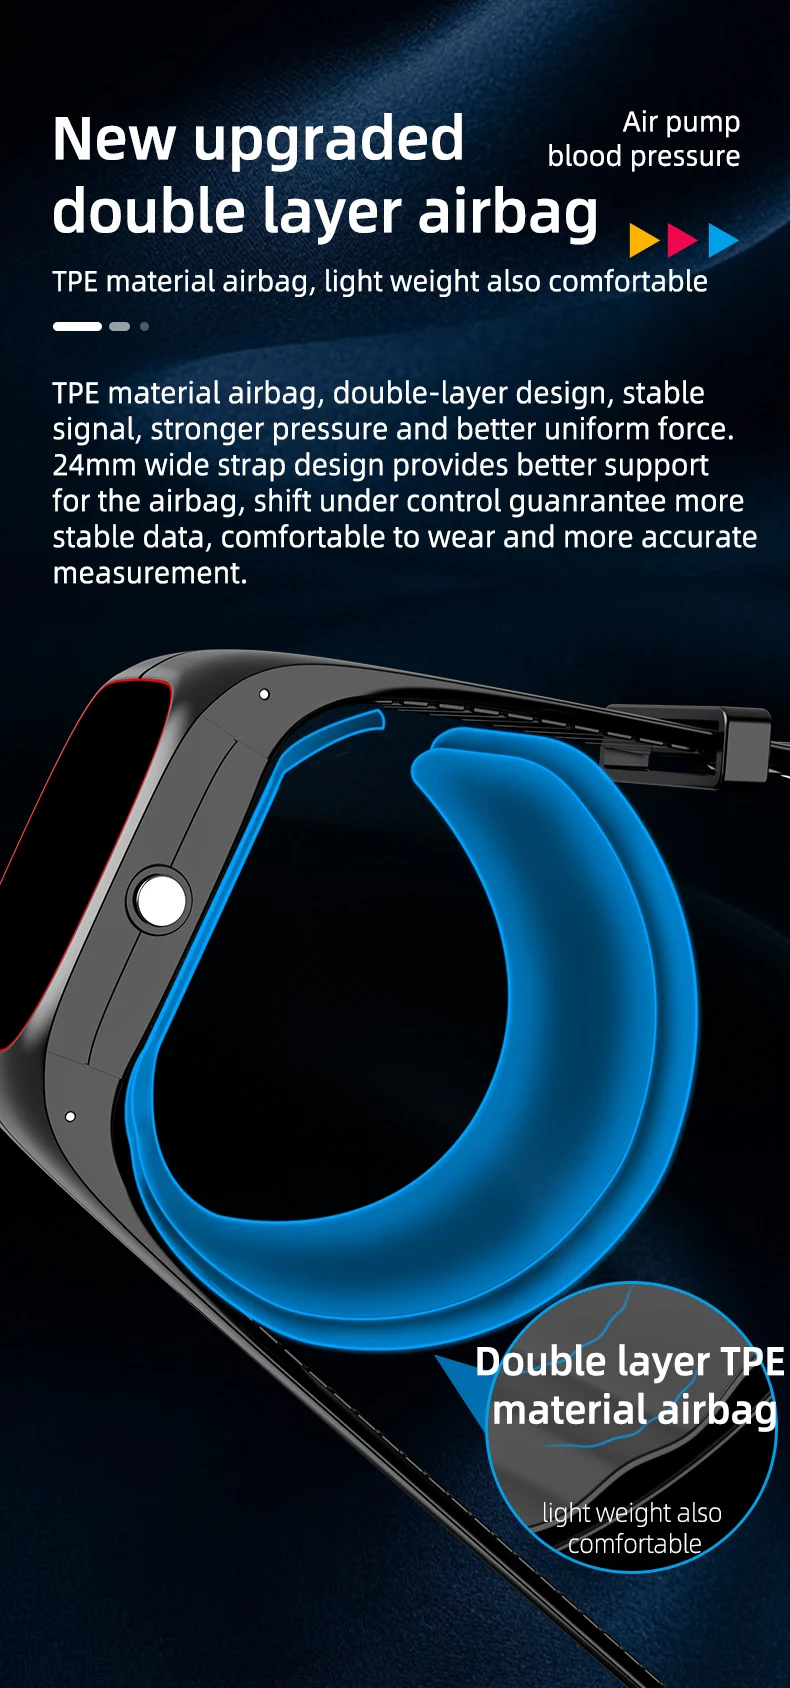 P20 Smart Watch Air Pump Blood Pressure (3).jpg